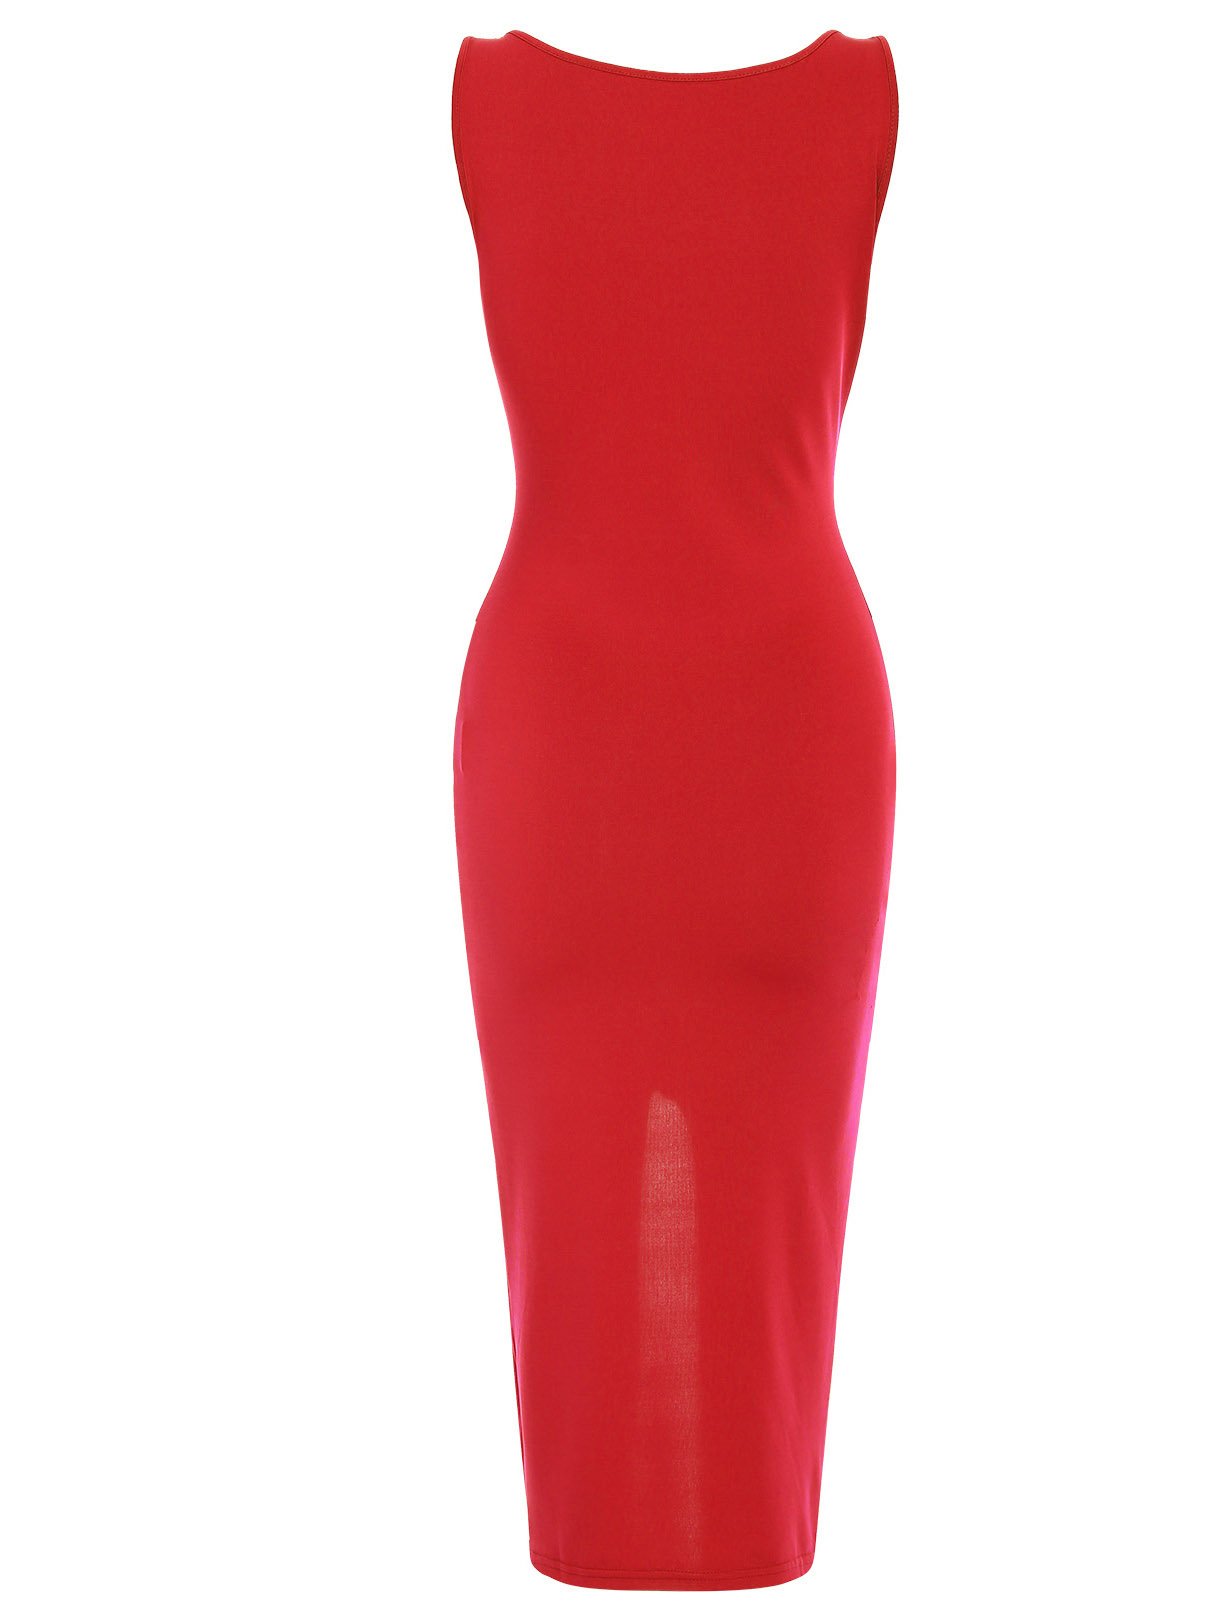 OEM Ladies Red Bodycon Dresses